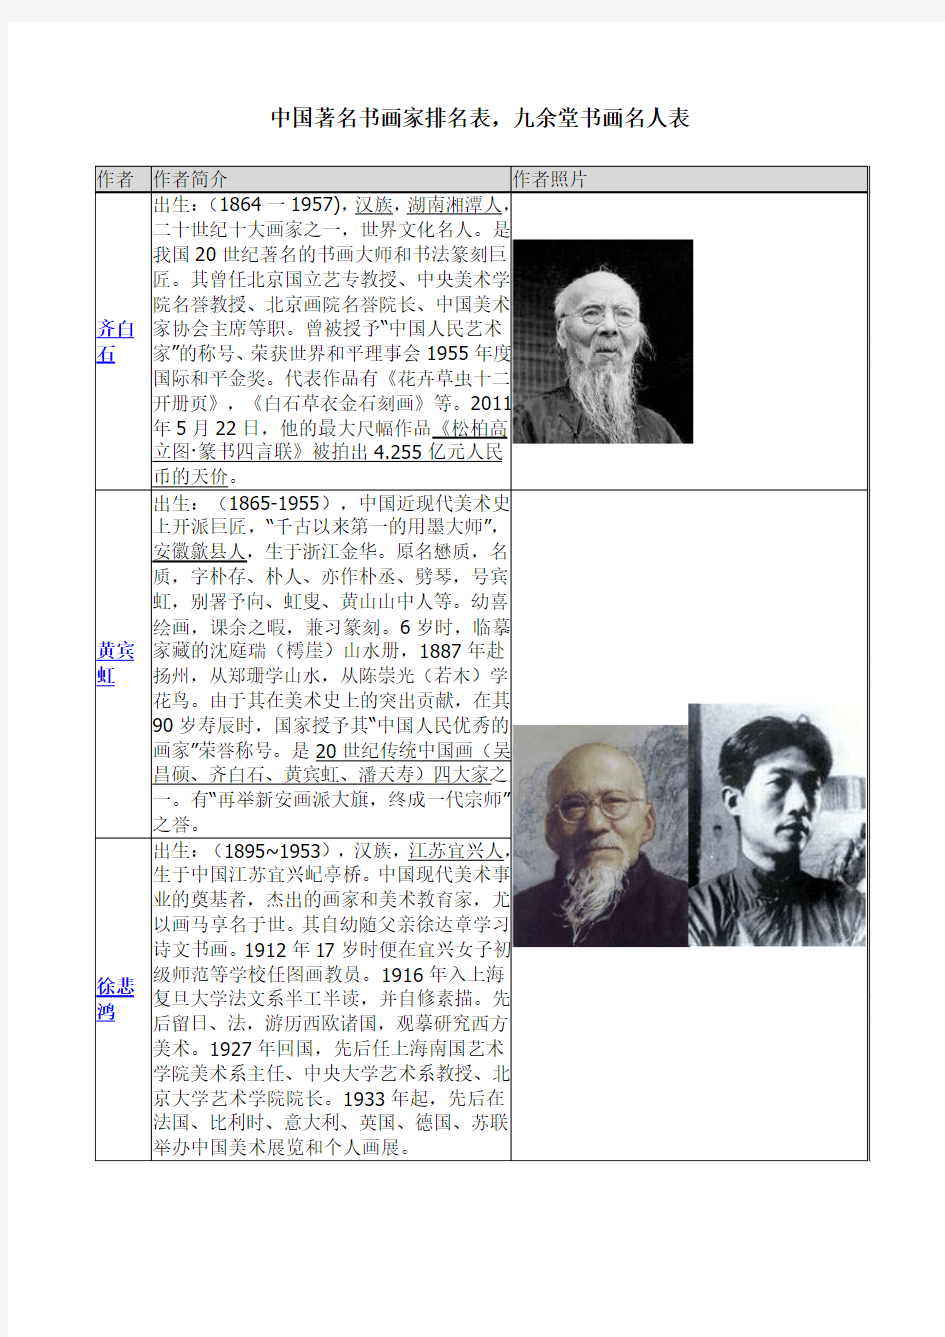 中国著名书画家排名表,九余堂书画名人表